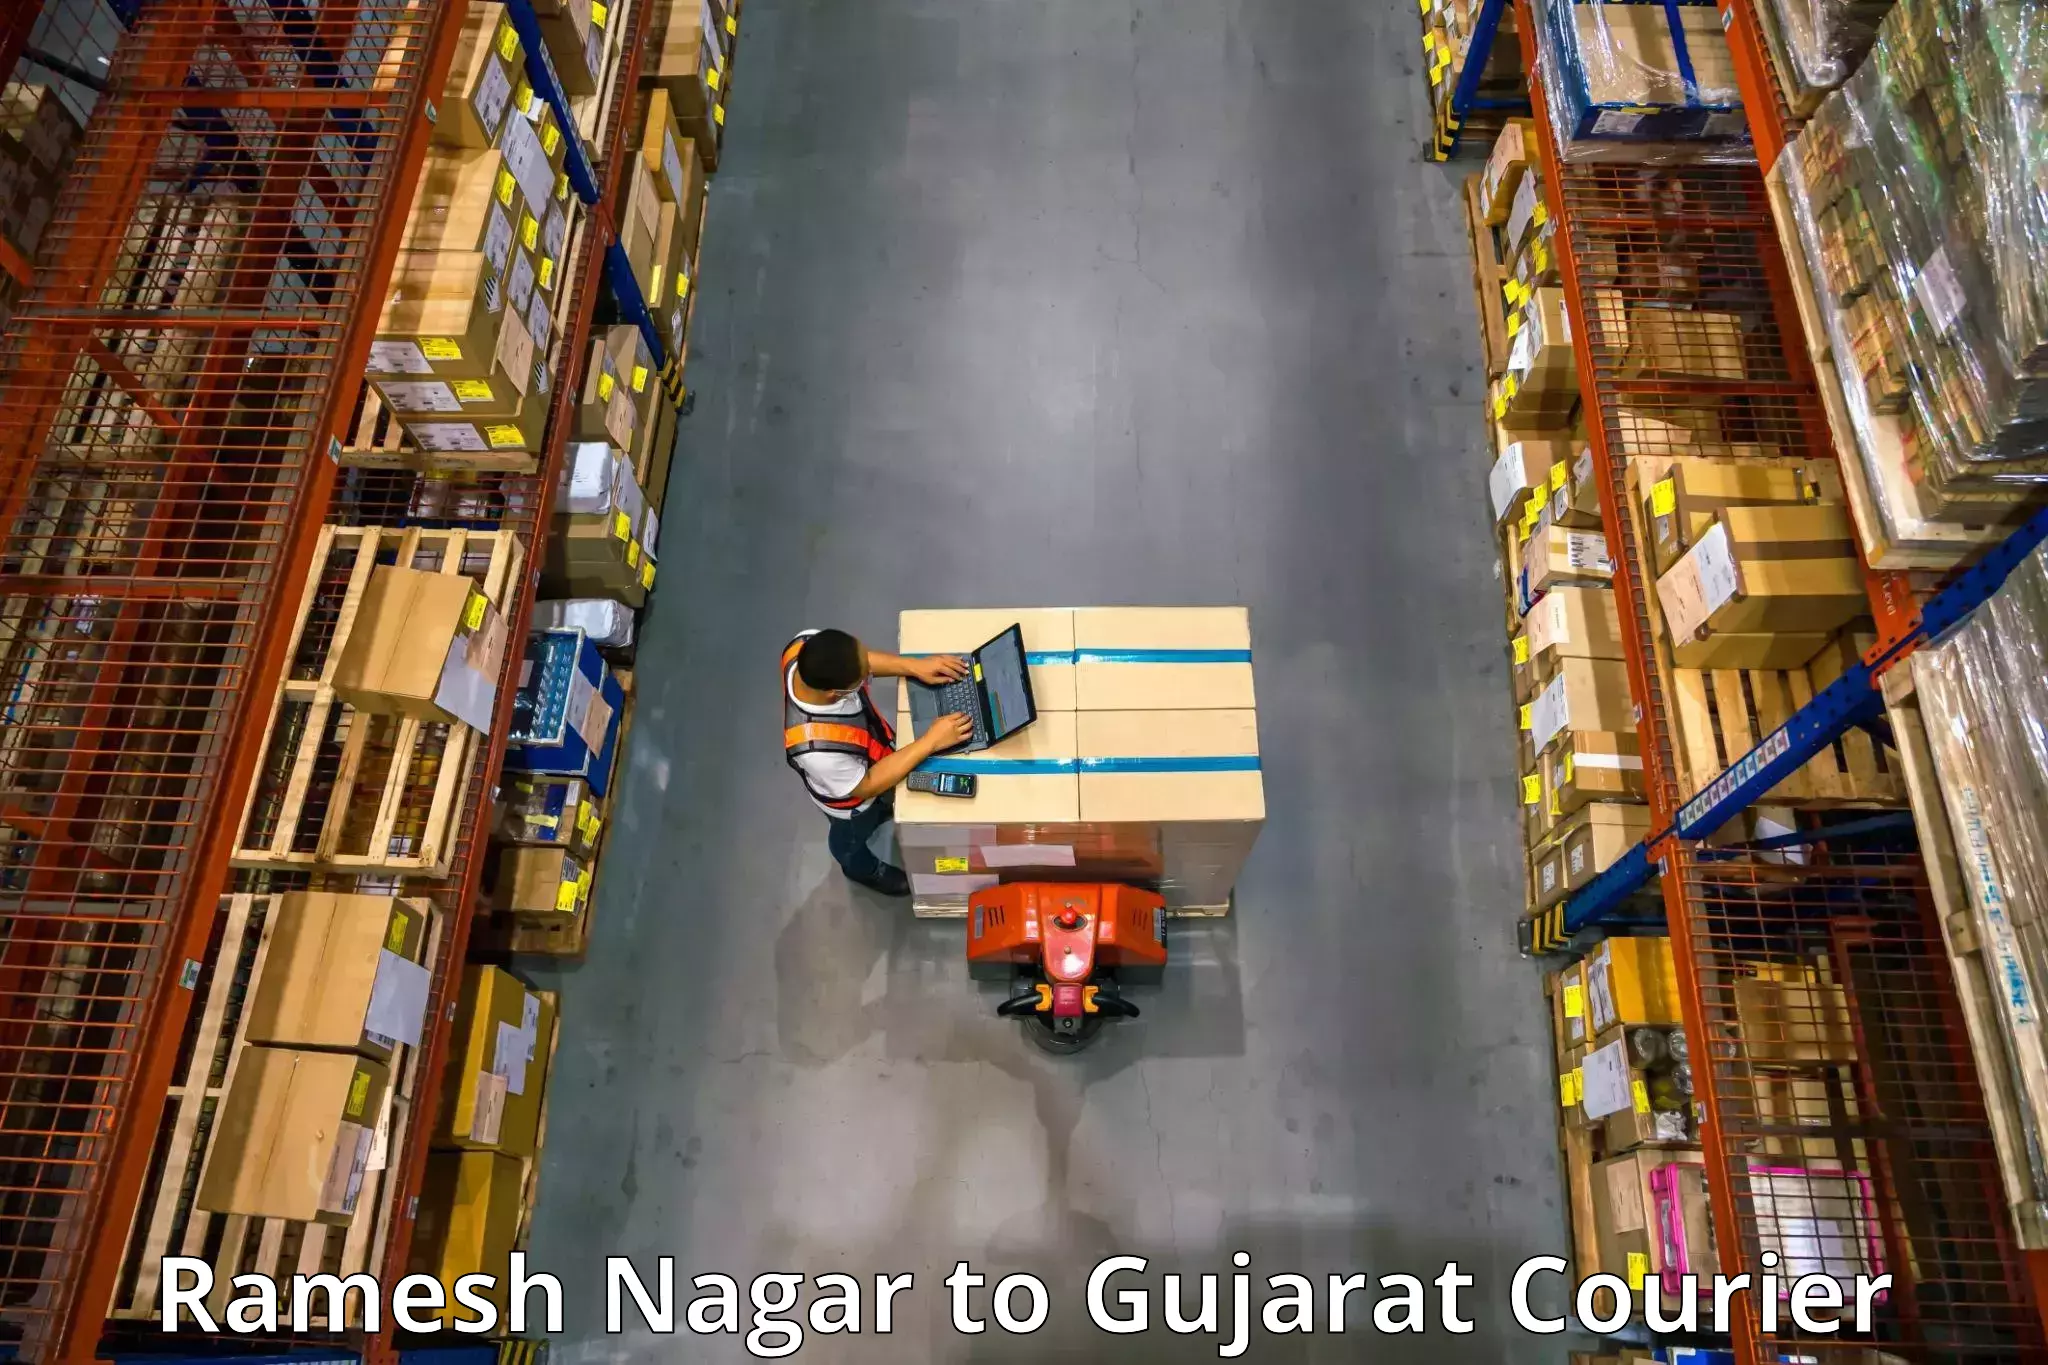 Furniture moving experts Ramesh Nagar to Vansda